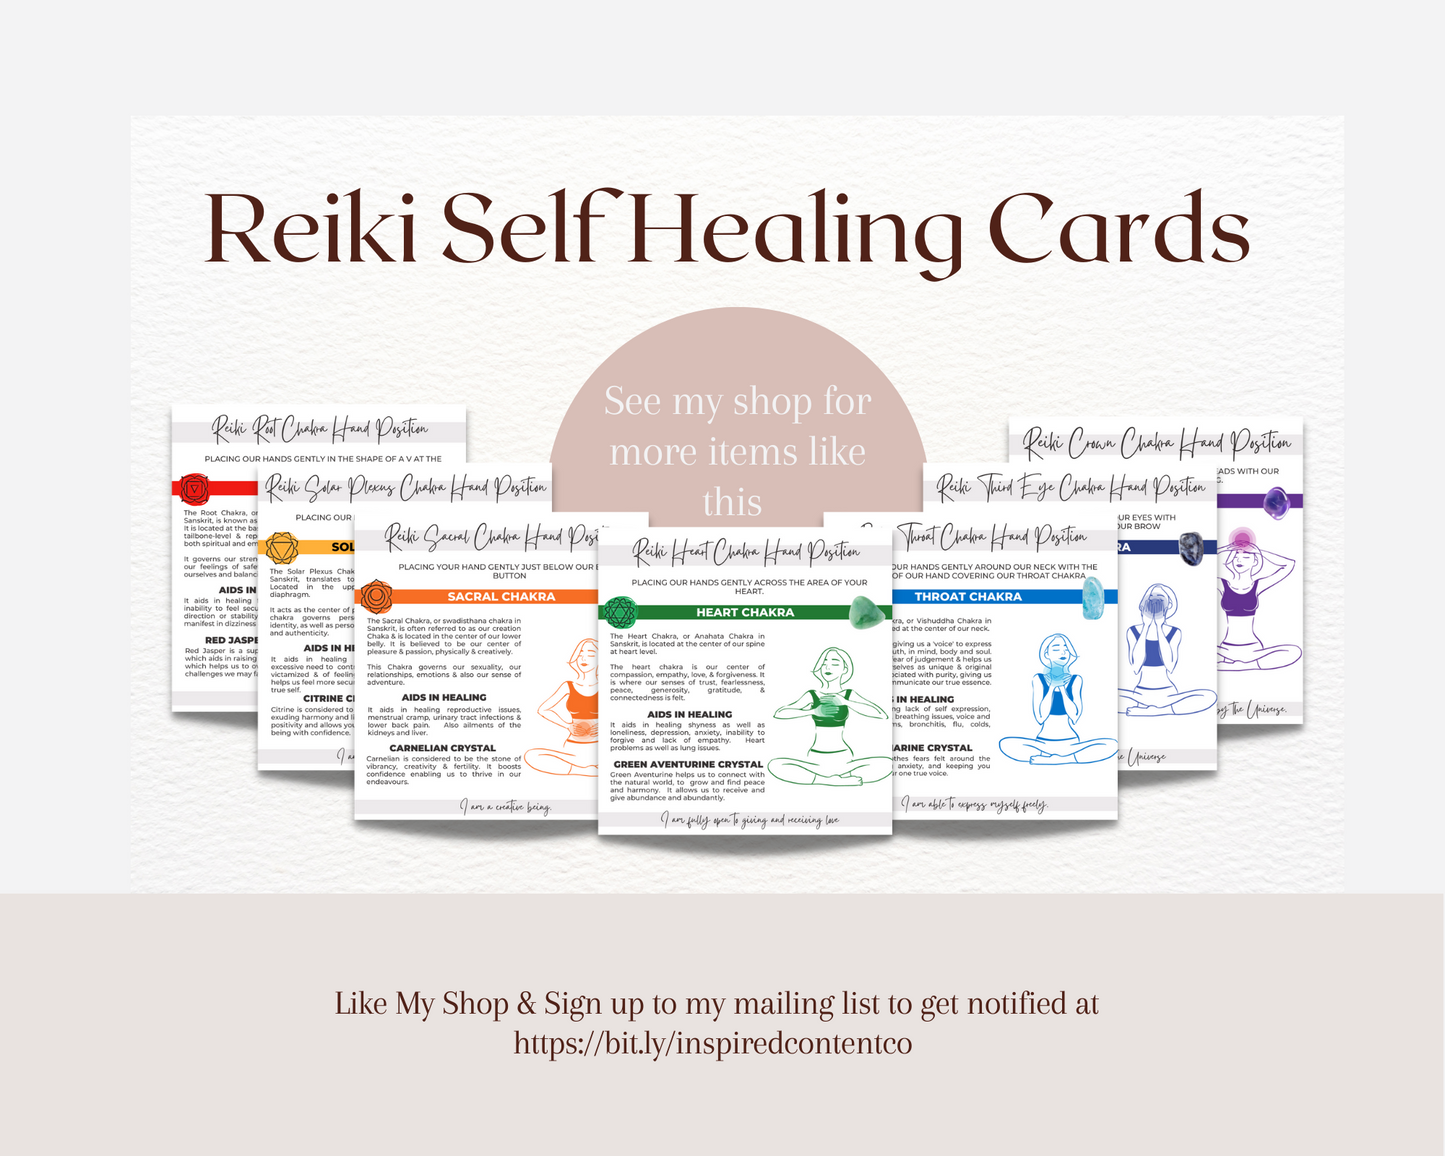 Reiki Crystal Healing Brochure, Reiki Brochure for yr Crytal Energy Healing & Reiki Business